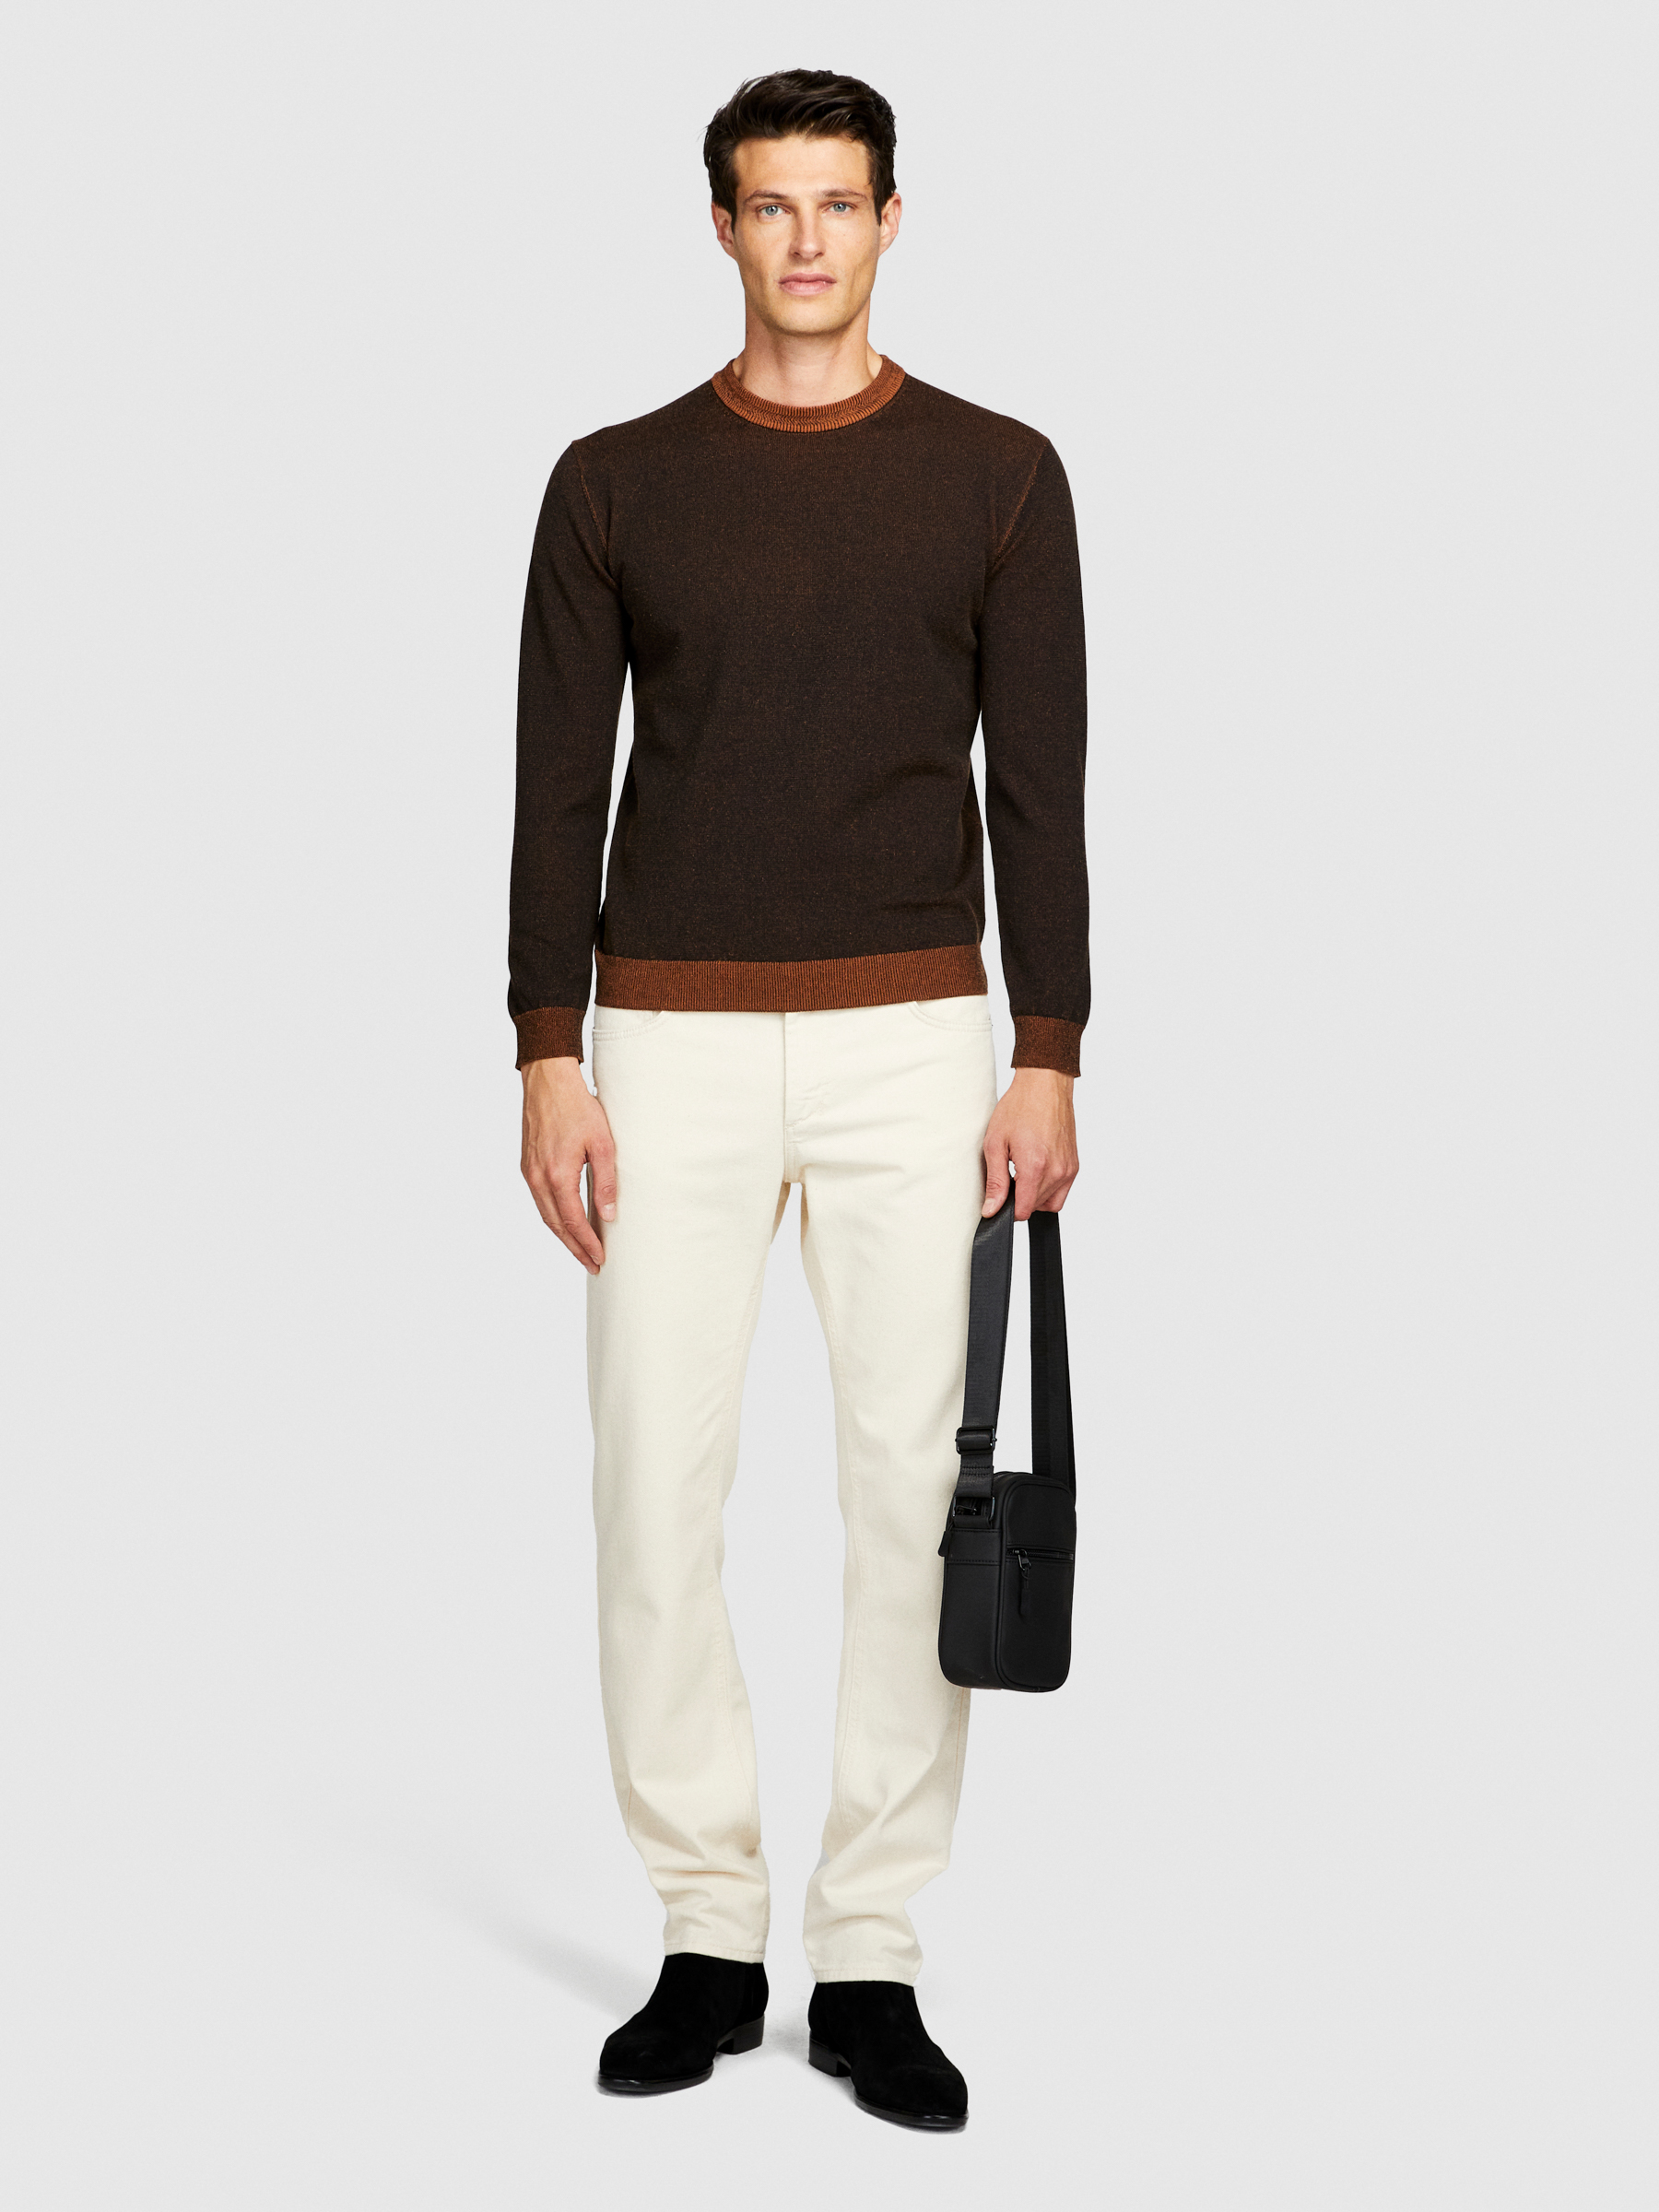 Sisley - Vanise Sweater, Man, Brown, Size: EL